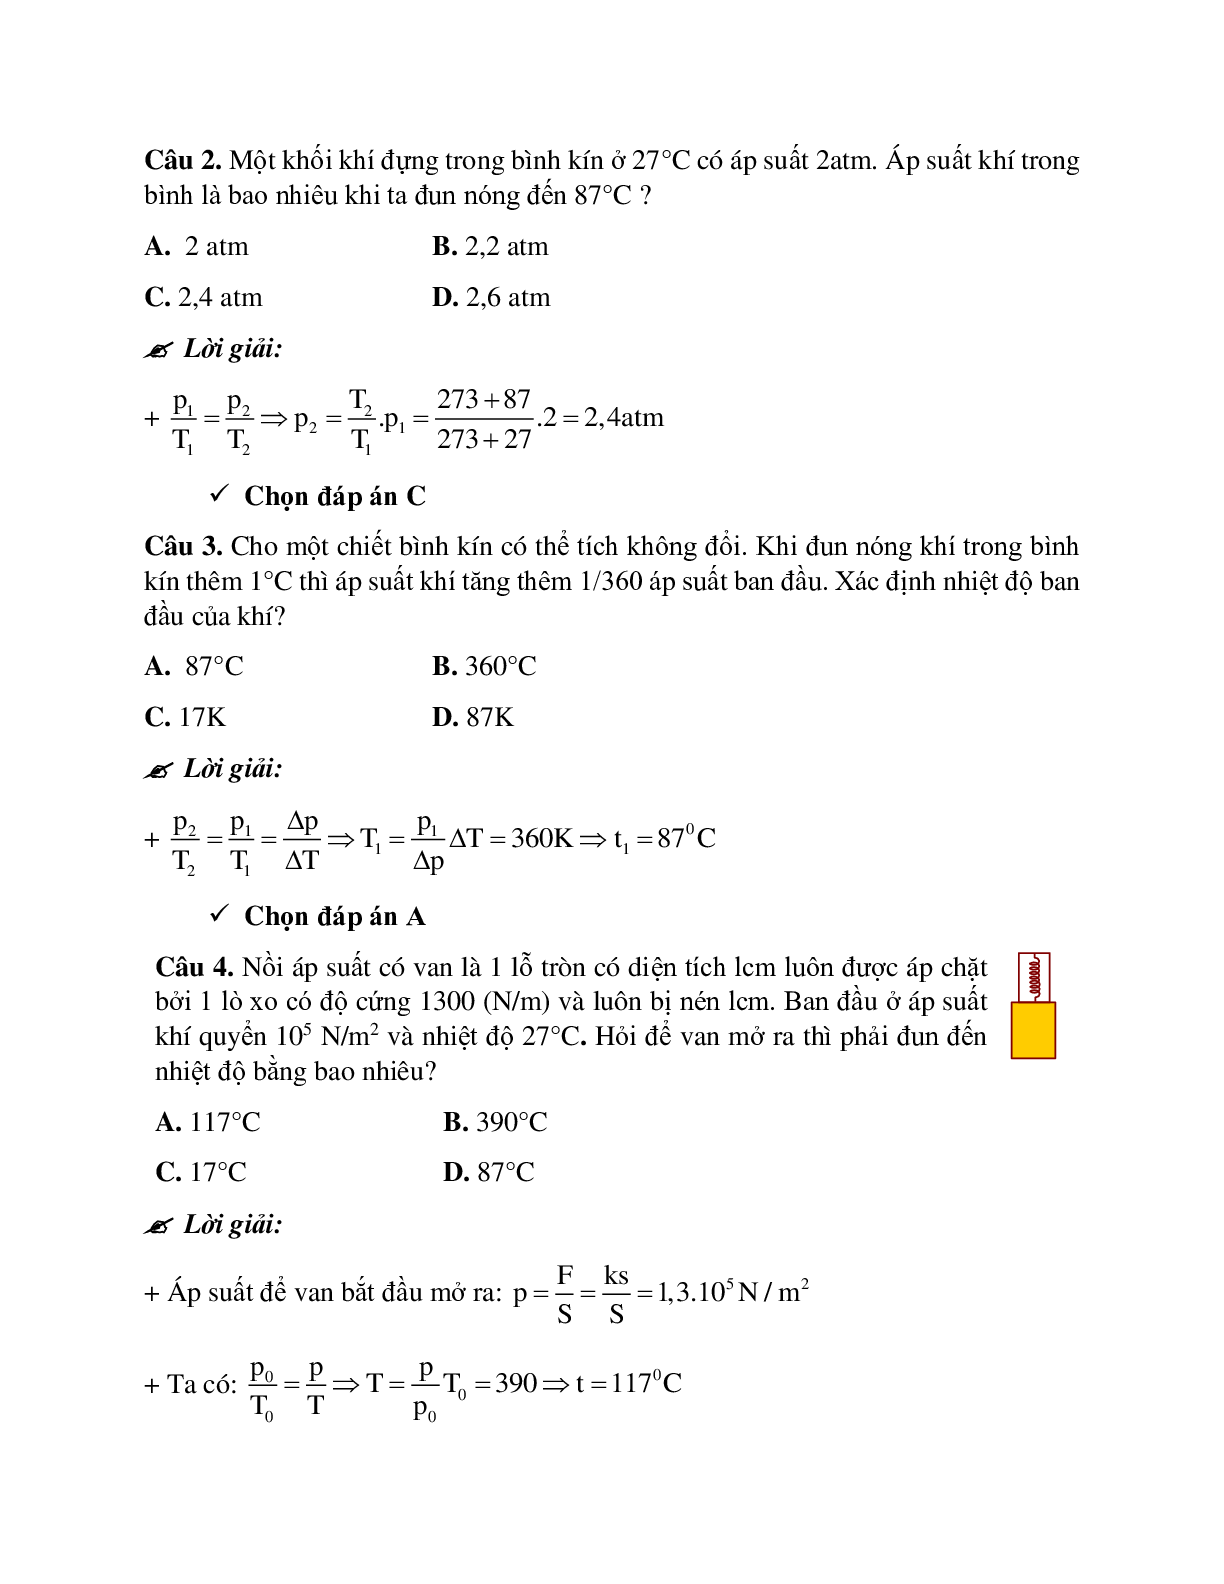 Bài tập về quá trình đẳng tích - Định luật sác - lơ có đáp án (trang 5)